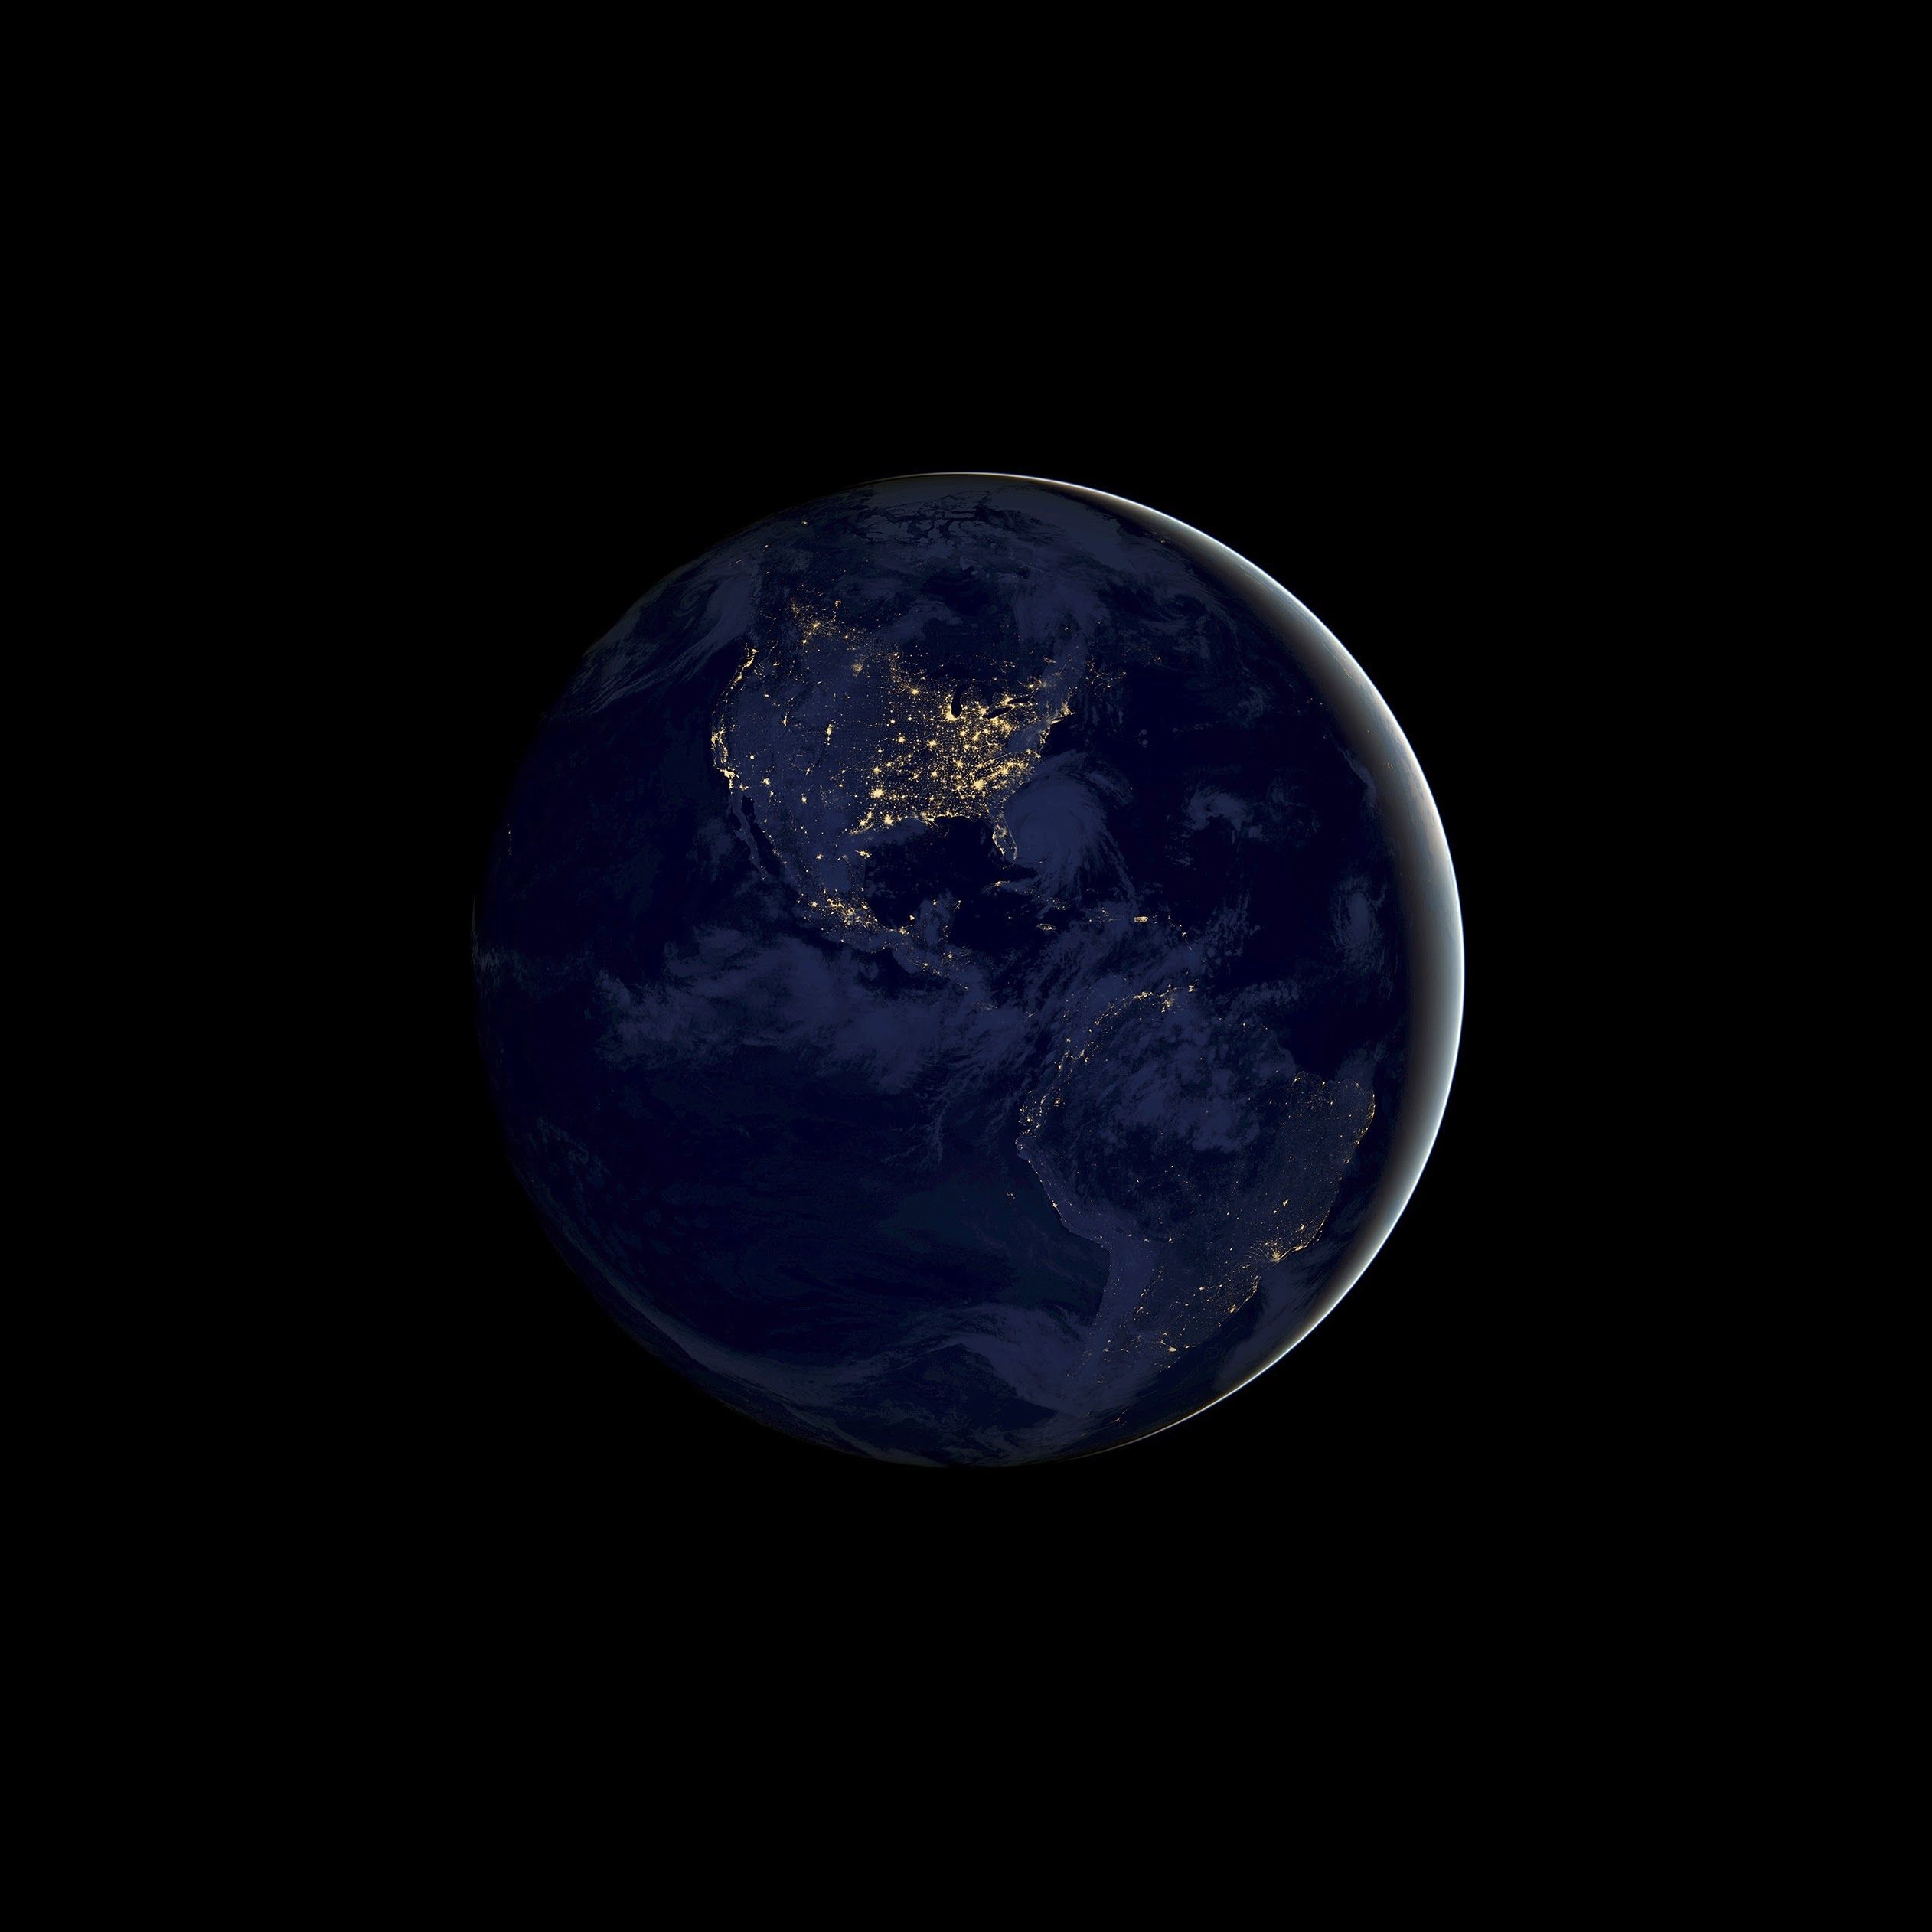  Erde Hintergrundbild 2524x2524. Kostenlose Hintergrundbilder Ästhetik Der Erde, Erde, Planet, Atmosphäre, Mond, Bilder Für Ihren Desktop Und Fotos